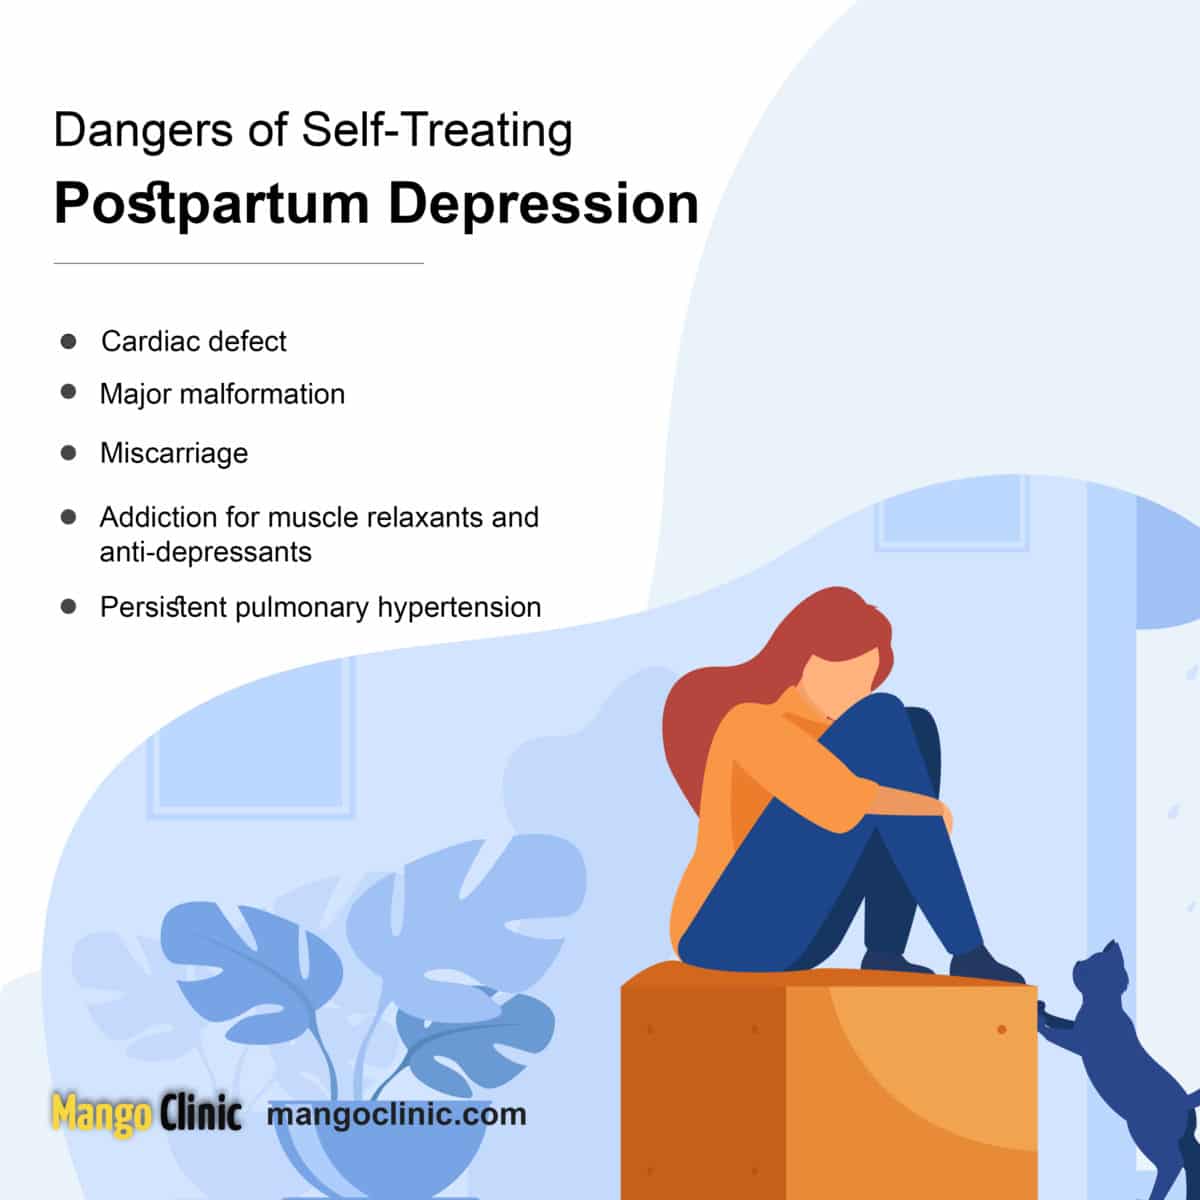 Postnatal Depression: Symptoms &  Treatment · Mango Clinic